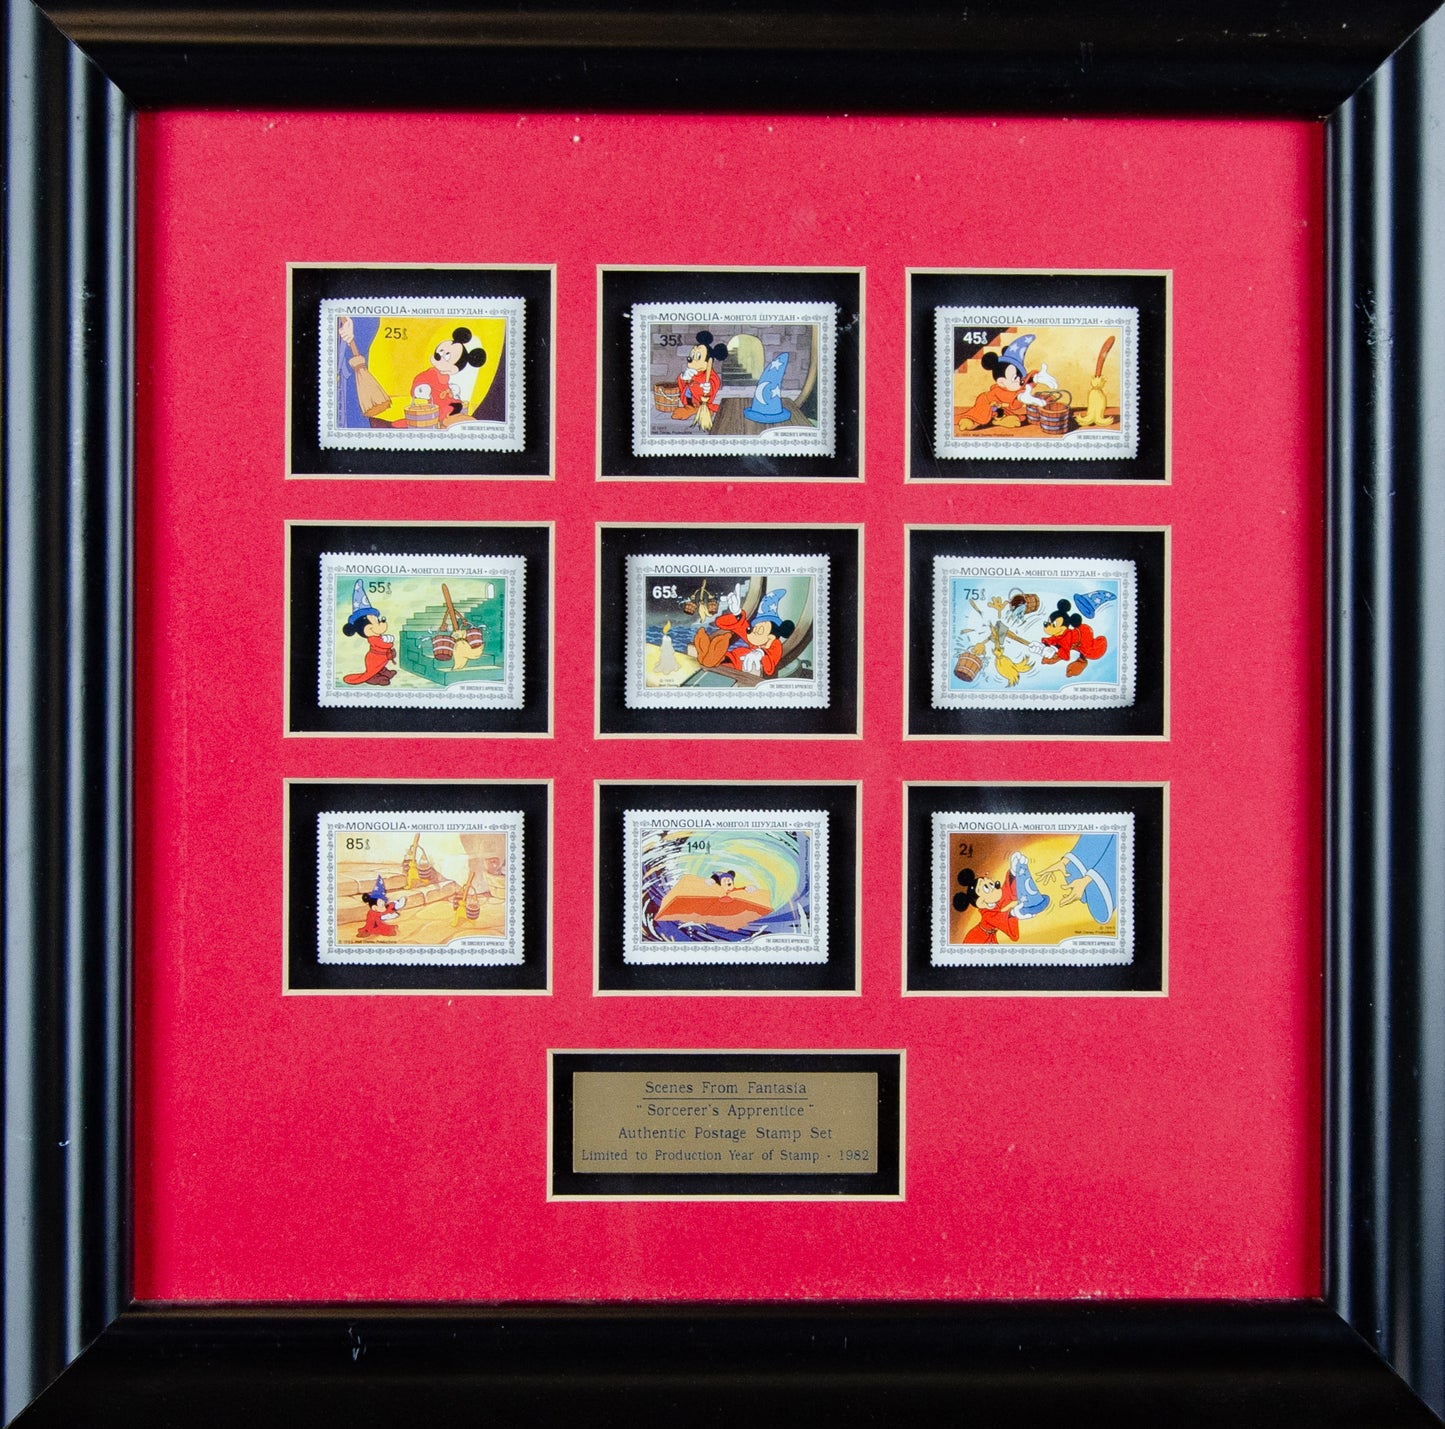 Framed Set of 9 Fantasia Stamps